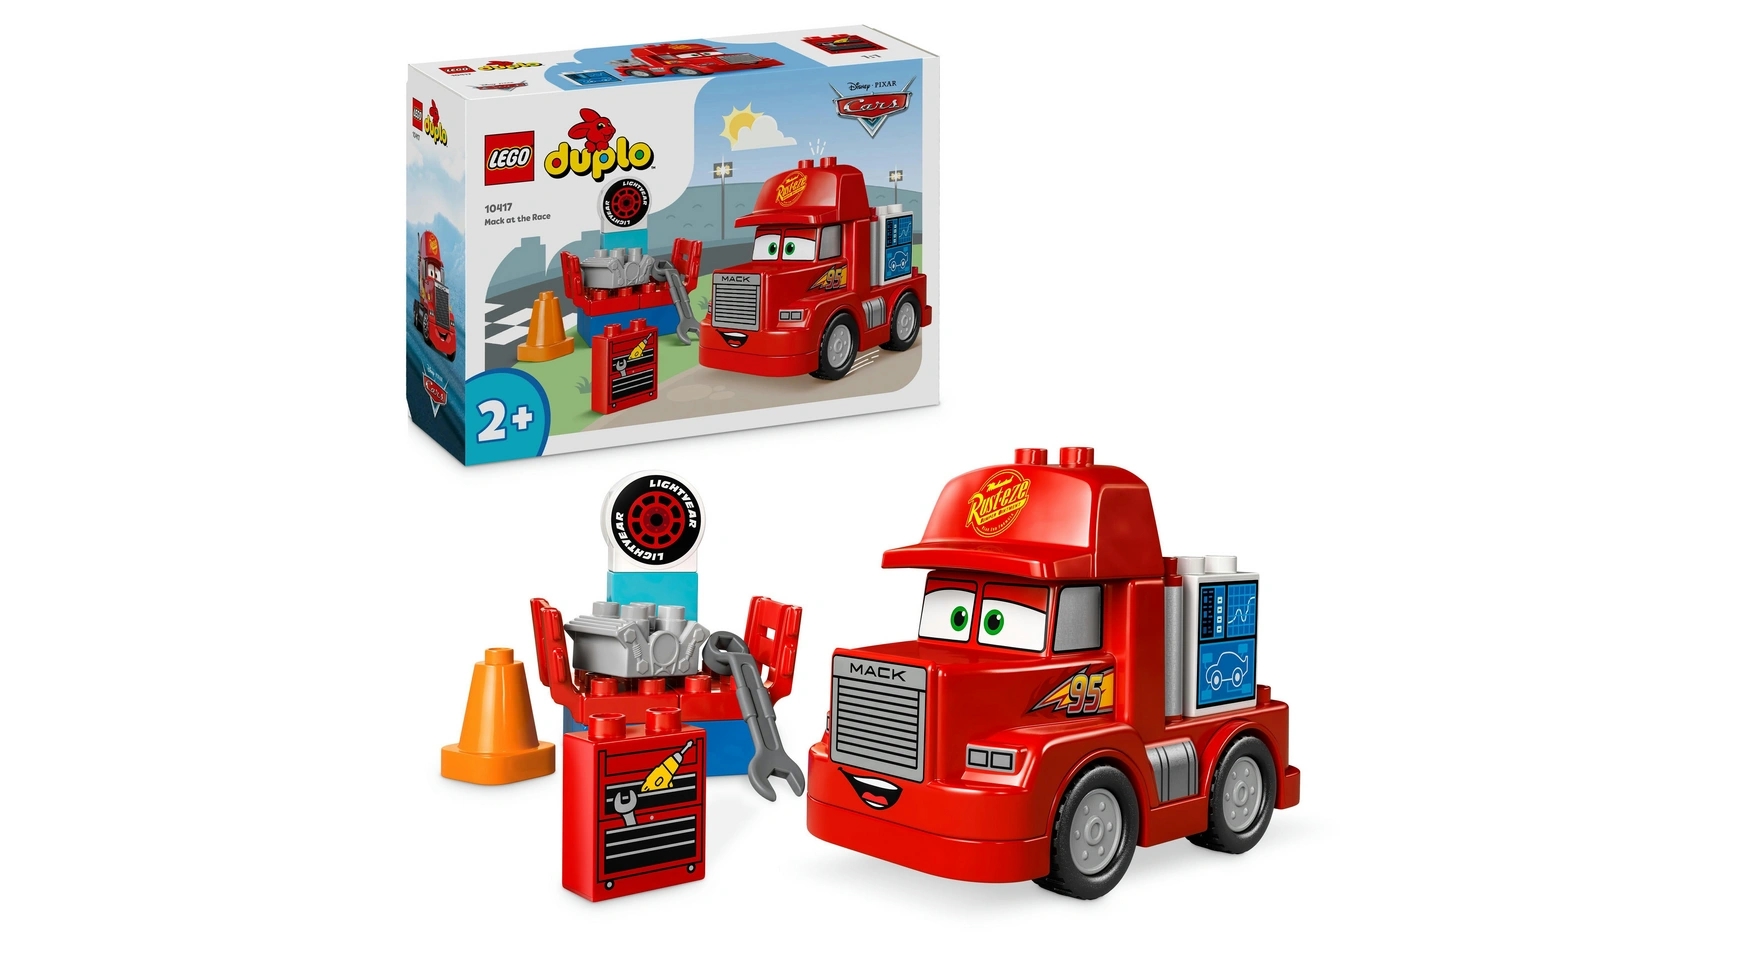 Lego DUPLO Гоночный грузовик Mack от Disney и Pixar Cars настольная игра тачки квартет disney